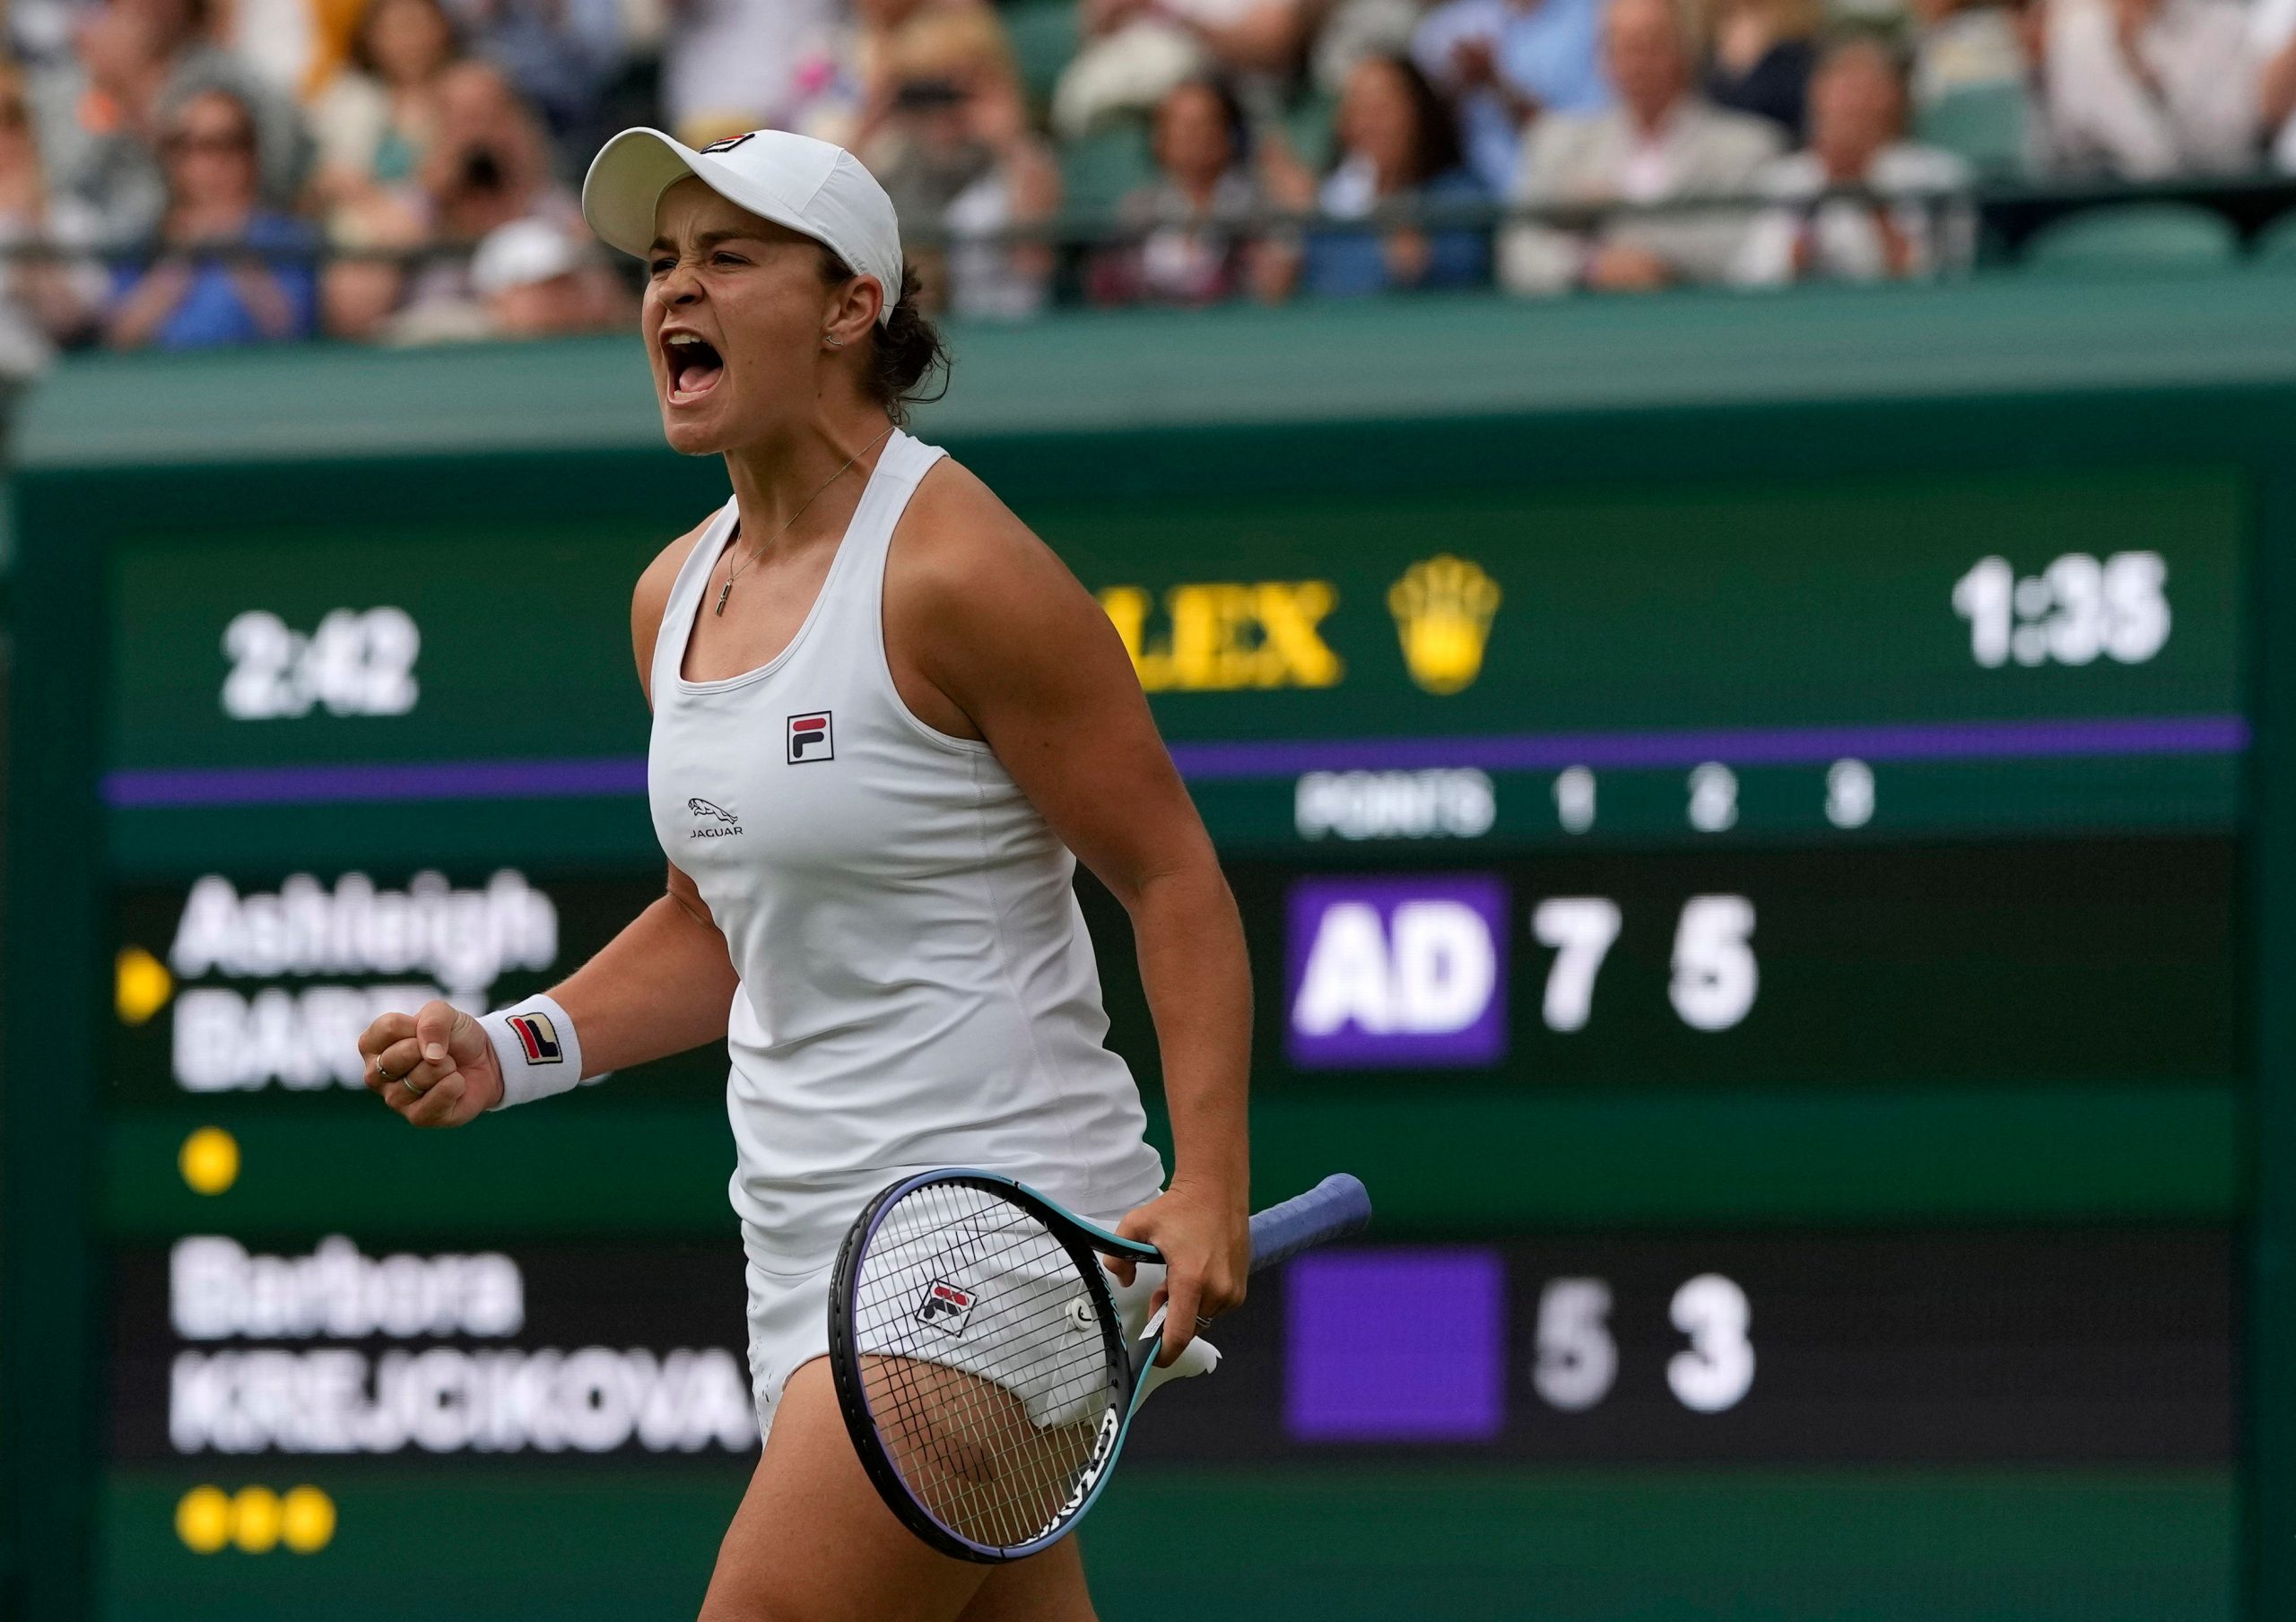 Wimbledon women’s final highlights: Barty beats Pliskova to win title